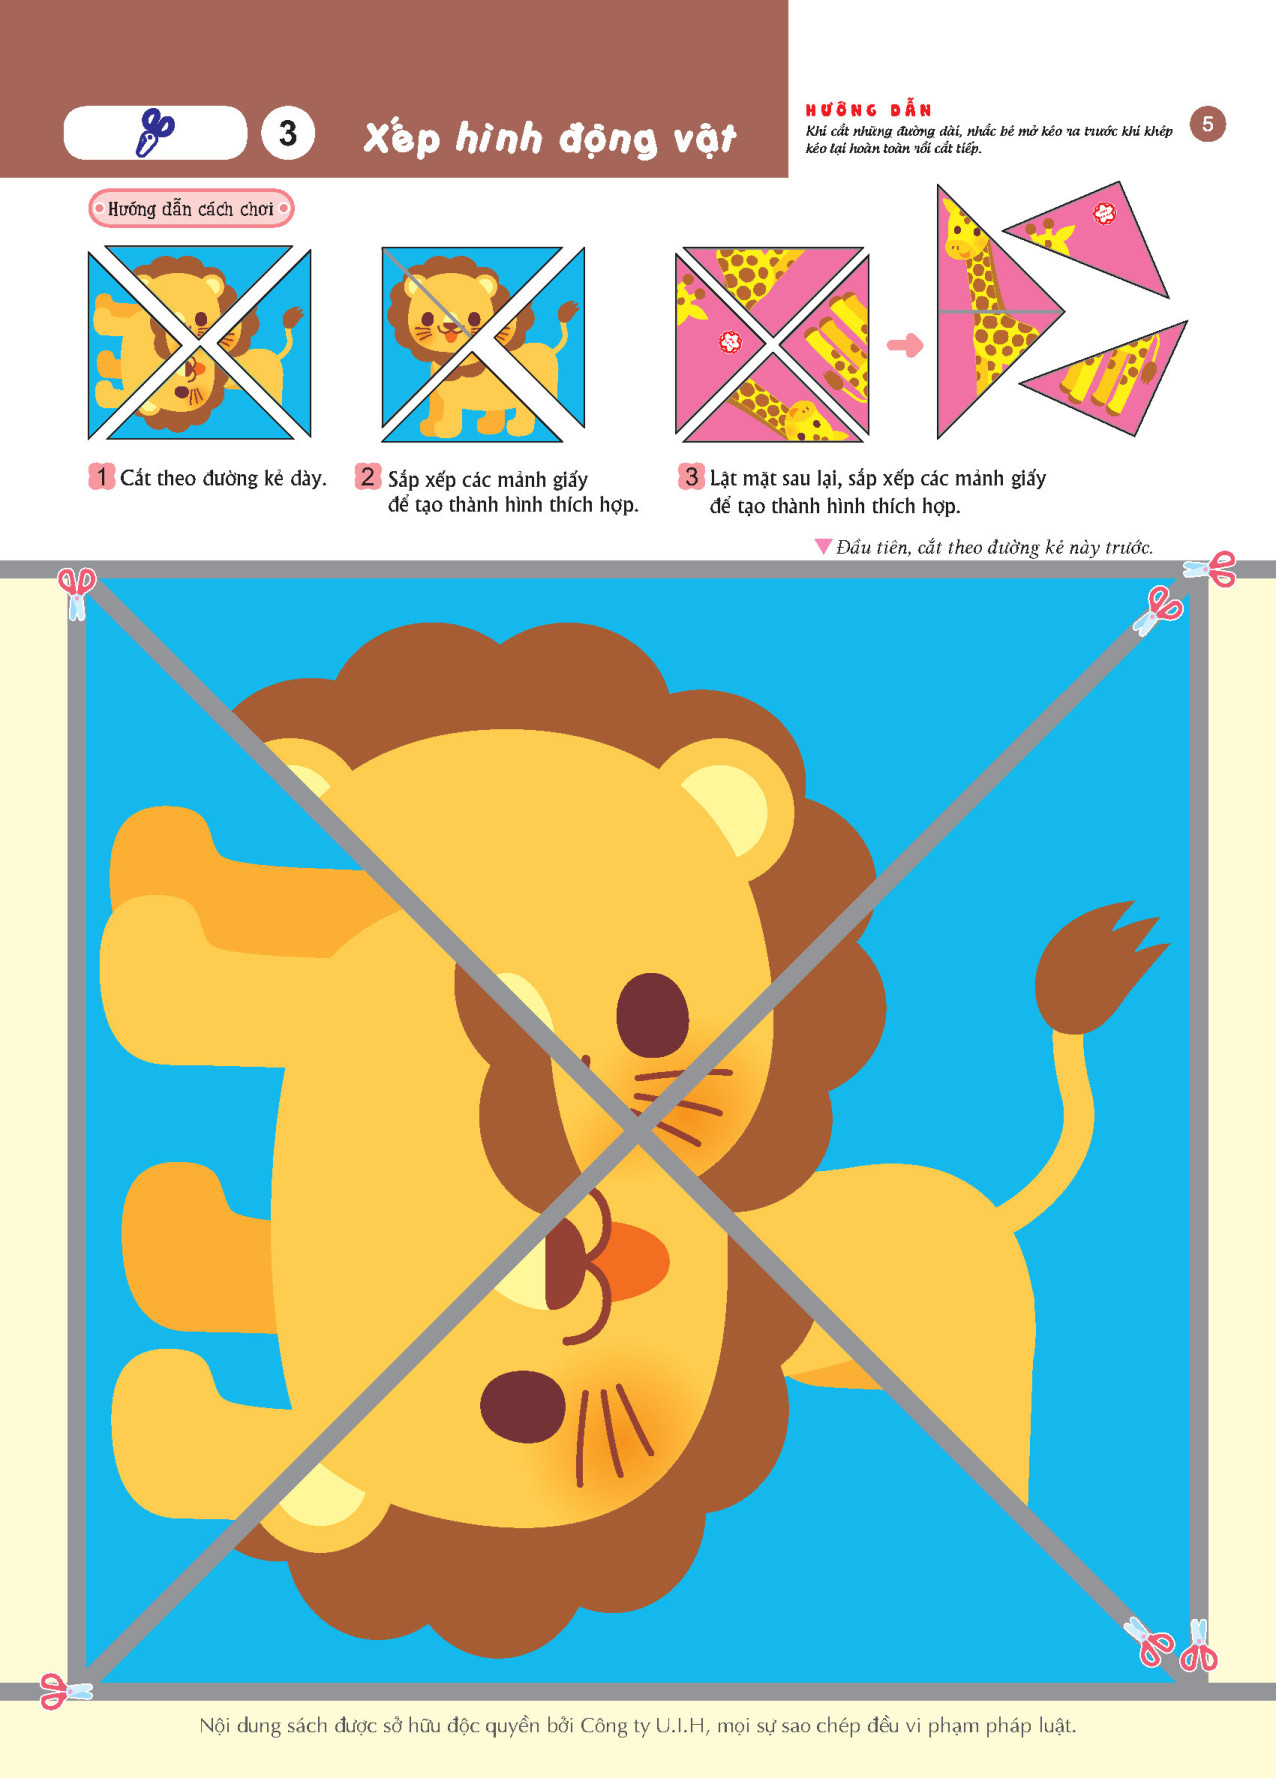 Thủ công (5~7 tuổi) Giáo dục Nhật Bản - Bộ sách dành cho lứa tuổi nhi đồng - Thích hợp cho trẻ đã quen với kéo và keo dán